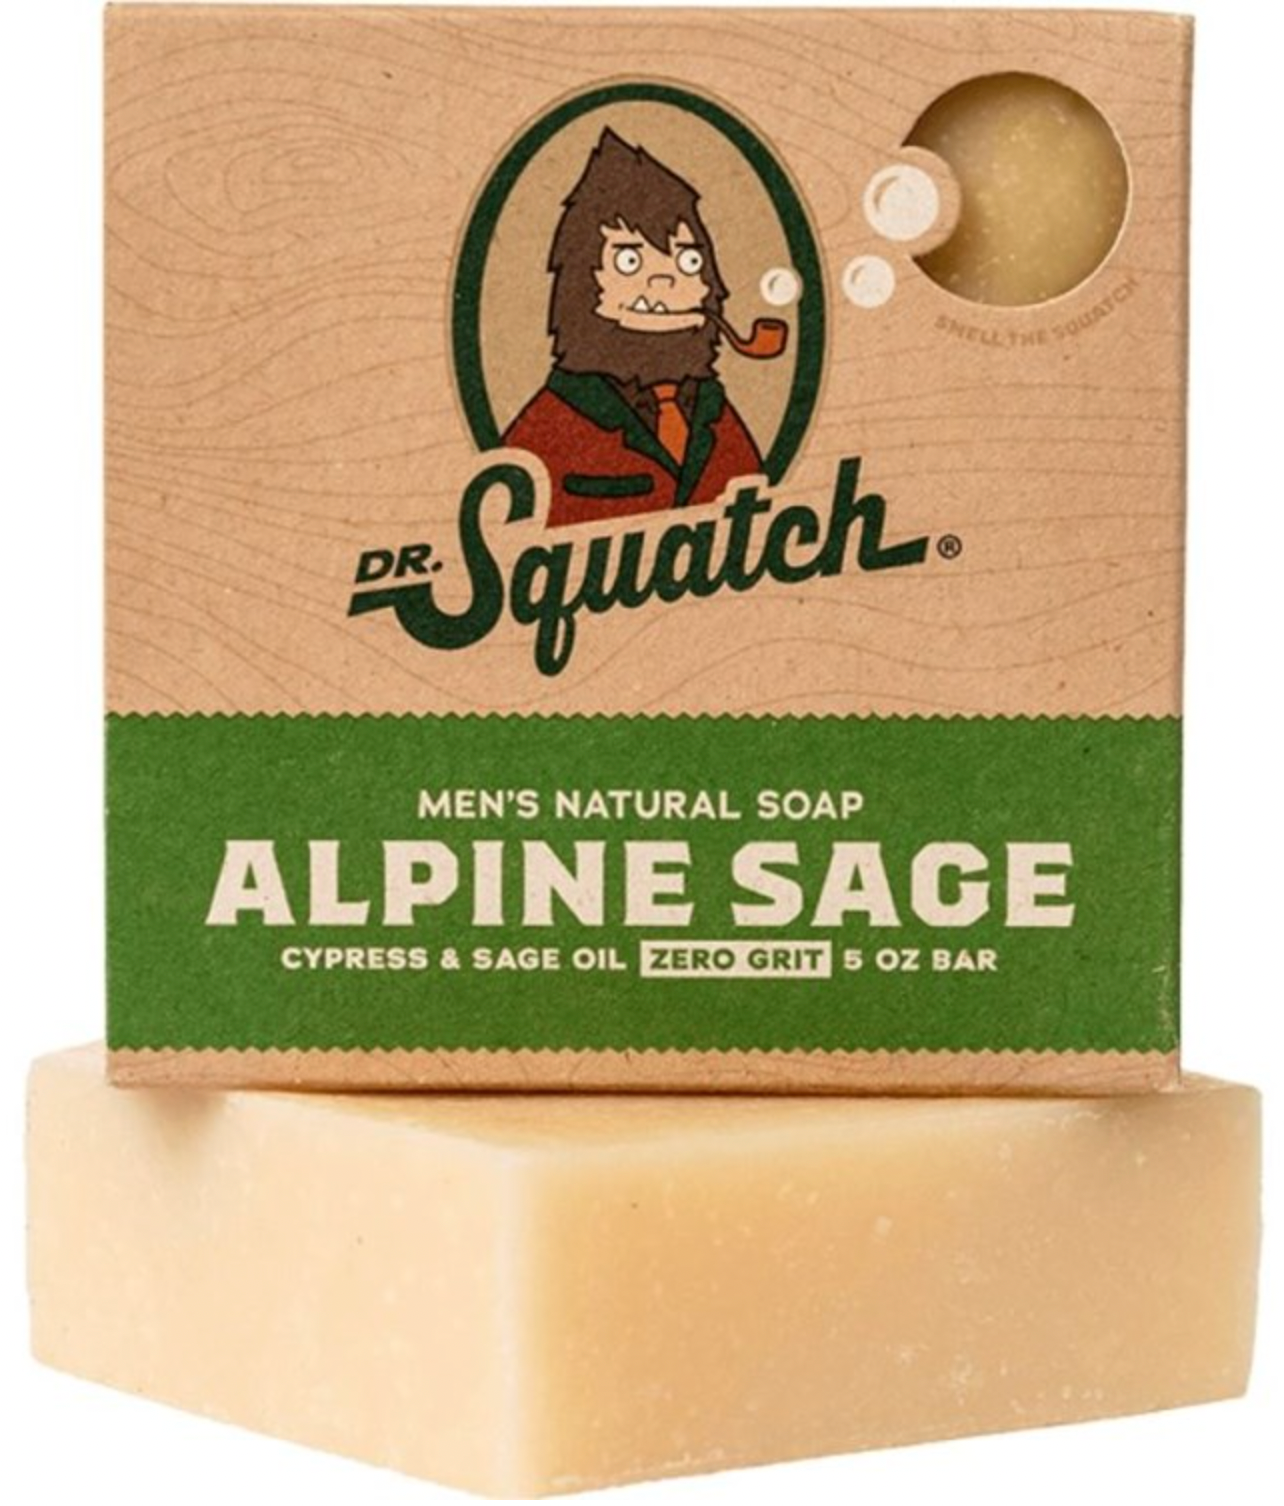 DR. SQUATCH Men's All Natural Bar Soap - Coconut Castaway - 5oz 5 oz